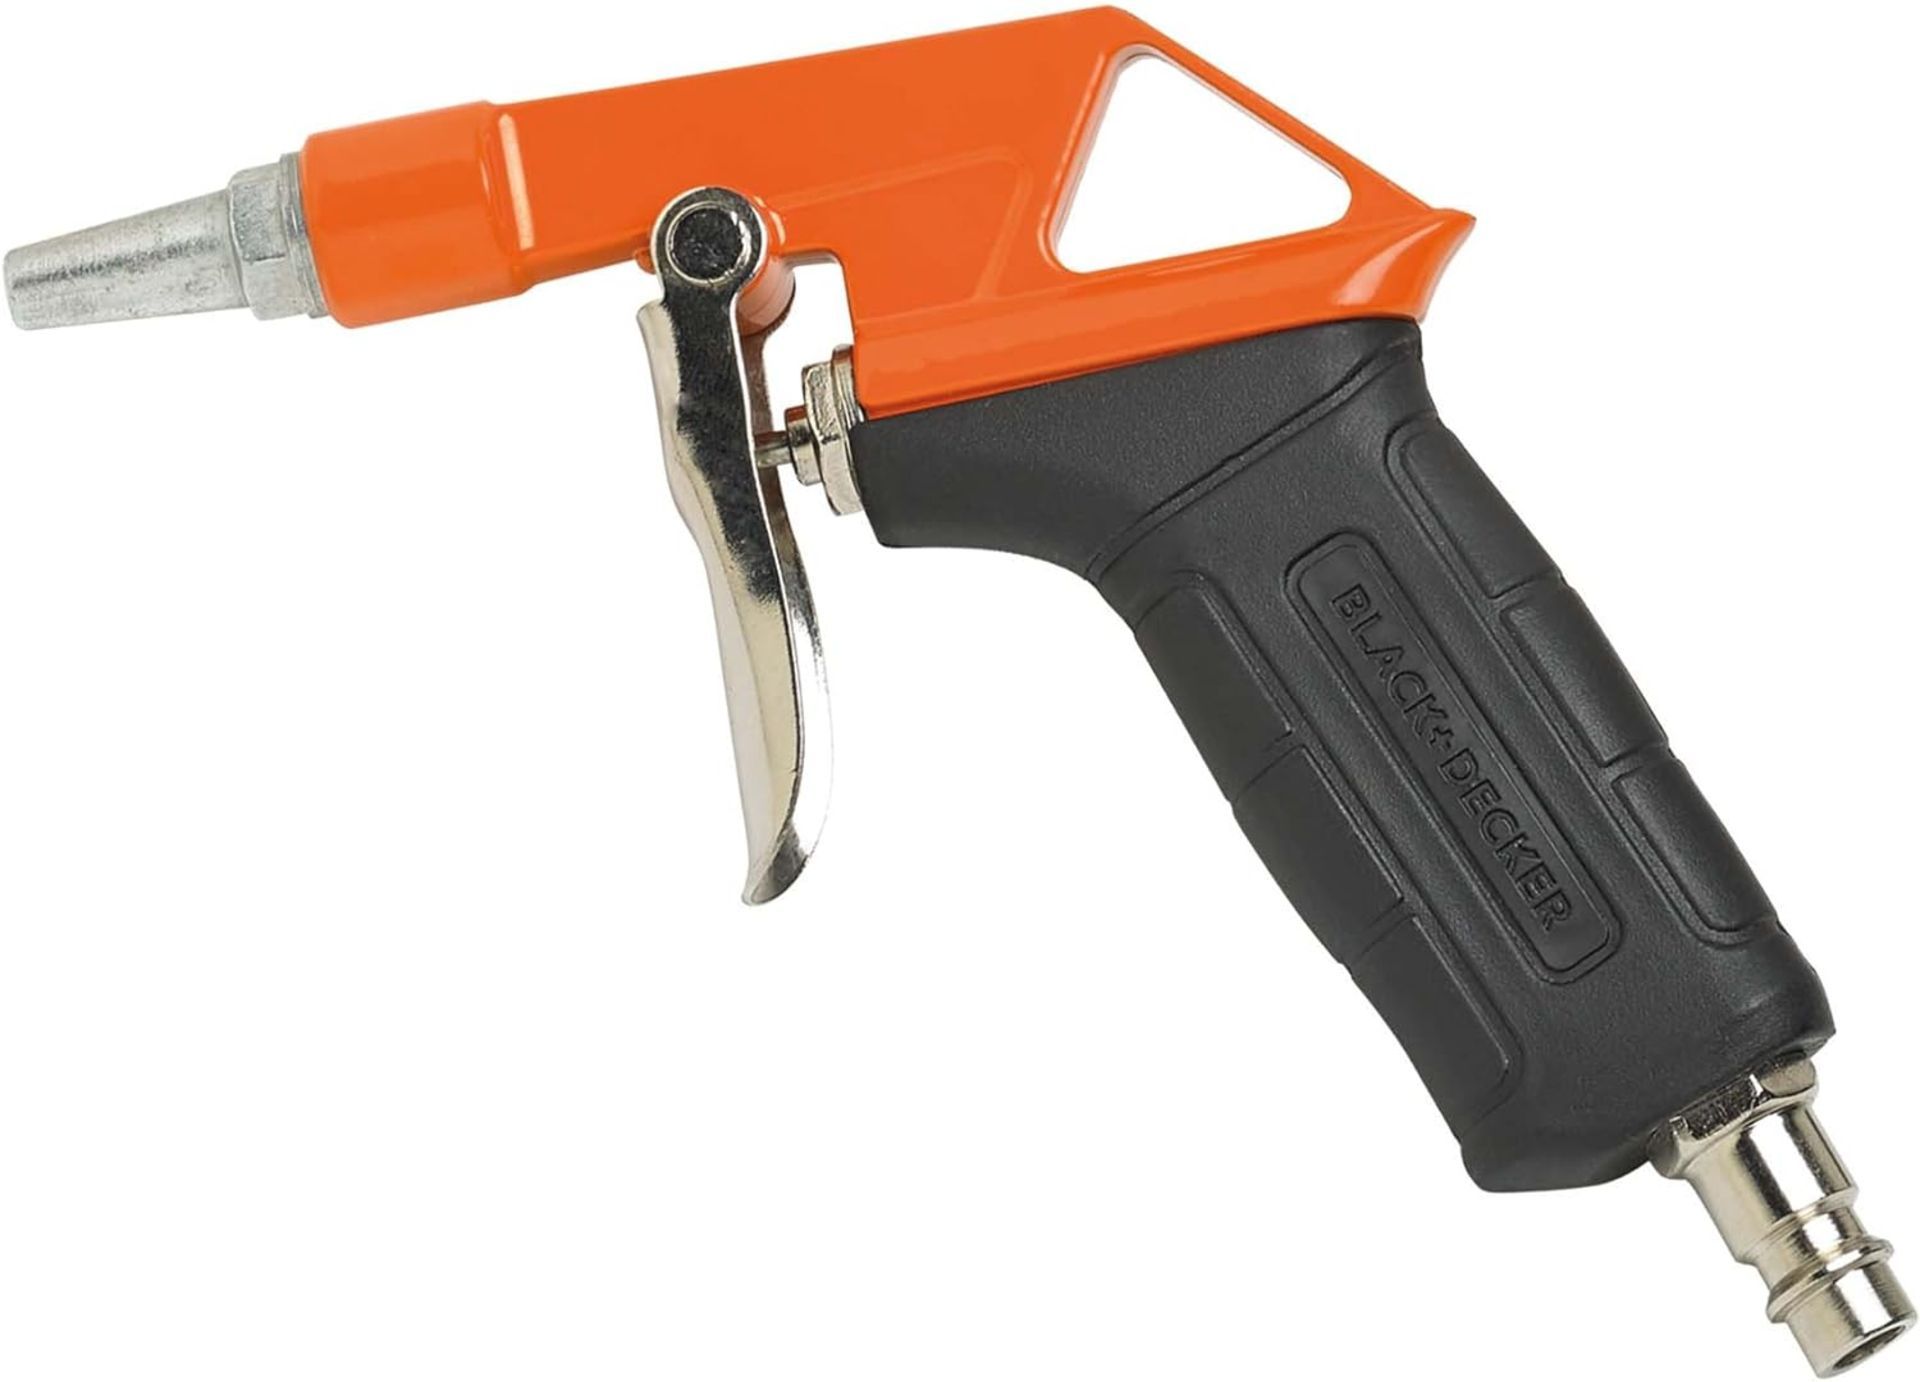 4 X Brand New Black & Decker 5 Piece Air Tool Kit, • Blowing Gun • Inflating Gun • Spray Gun • - Image 5 of 7